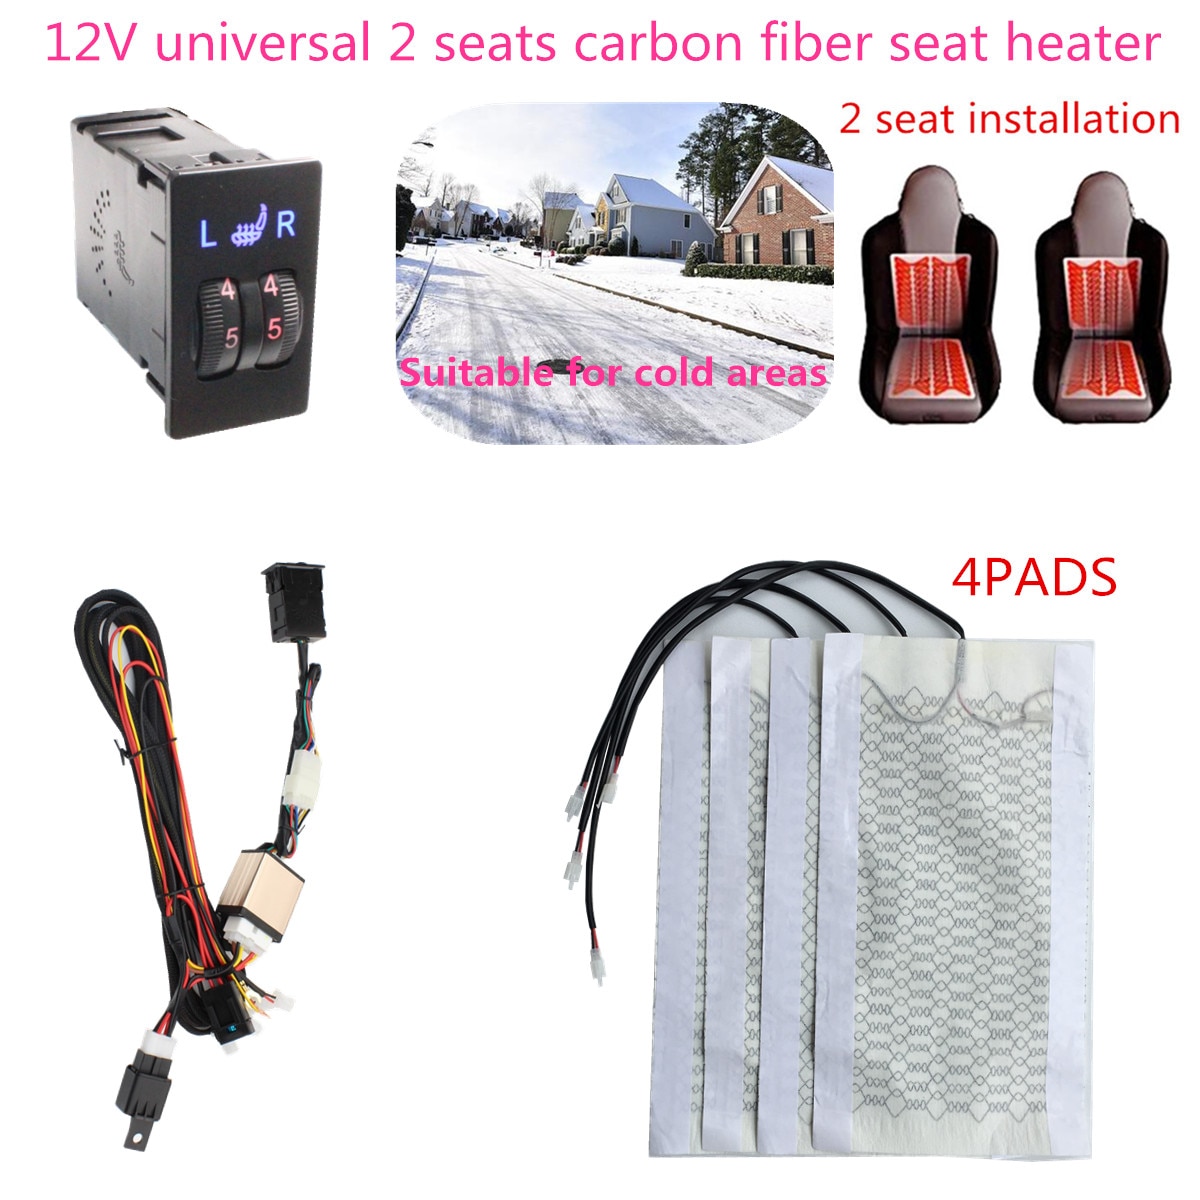 2 zetels 4 Pads Universal Carbon Fiber Verwarmd Stoelverwarming auto 12V Pads 2 Wijzerplaat 5 Schakelaar Bankjes interieur seat warm accessoires